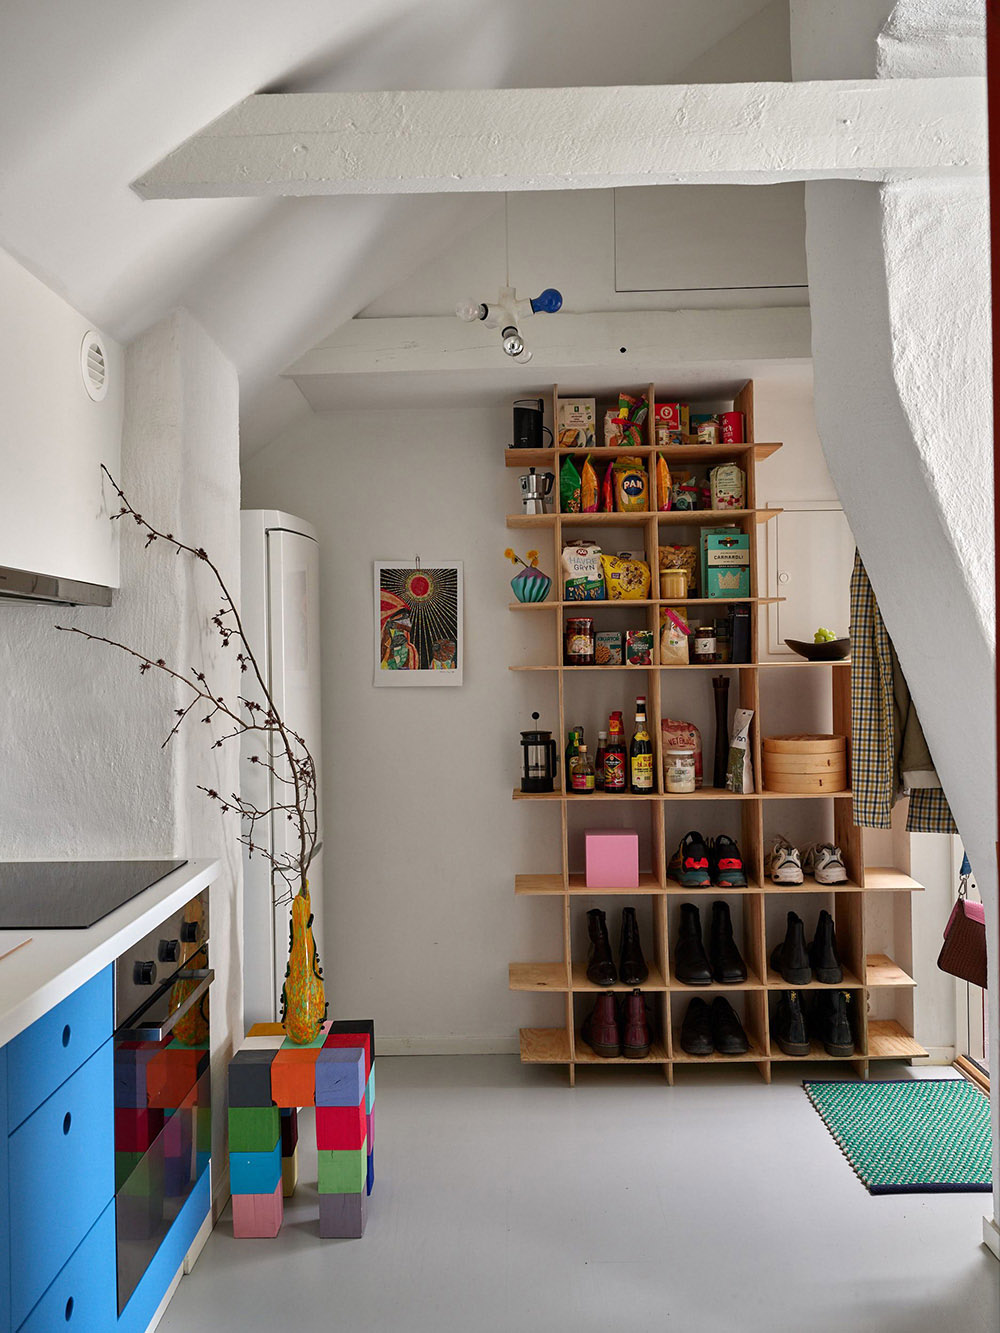 historiska hem,公寓设计,小户型设计,40㎡,公寓设计案例,公寓设计方案,阁楼设计,斯德哥尔摩